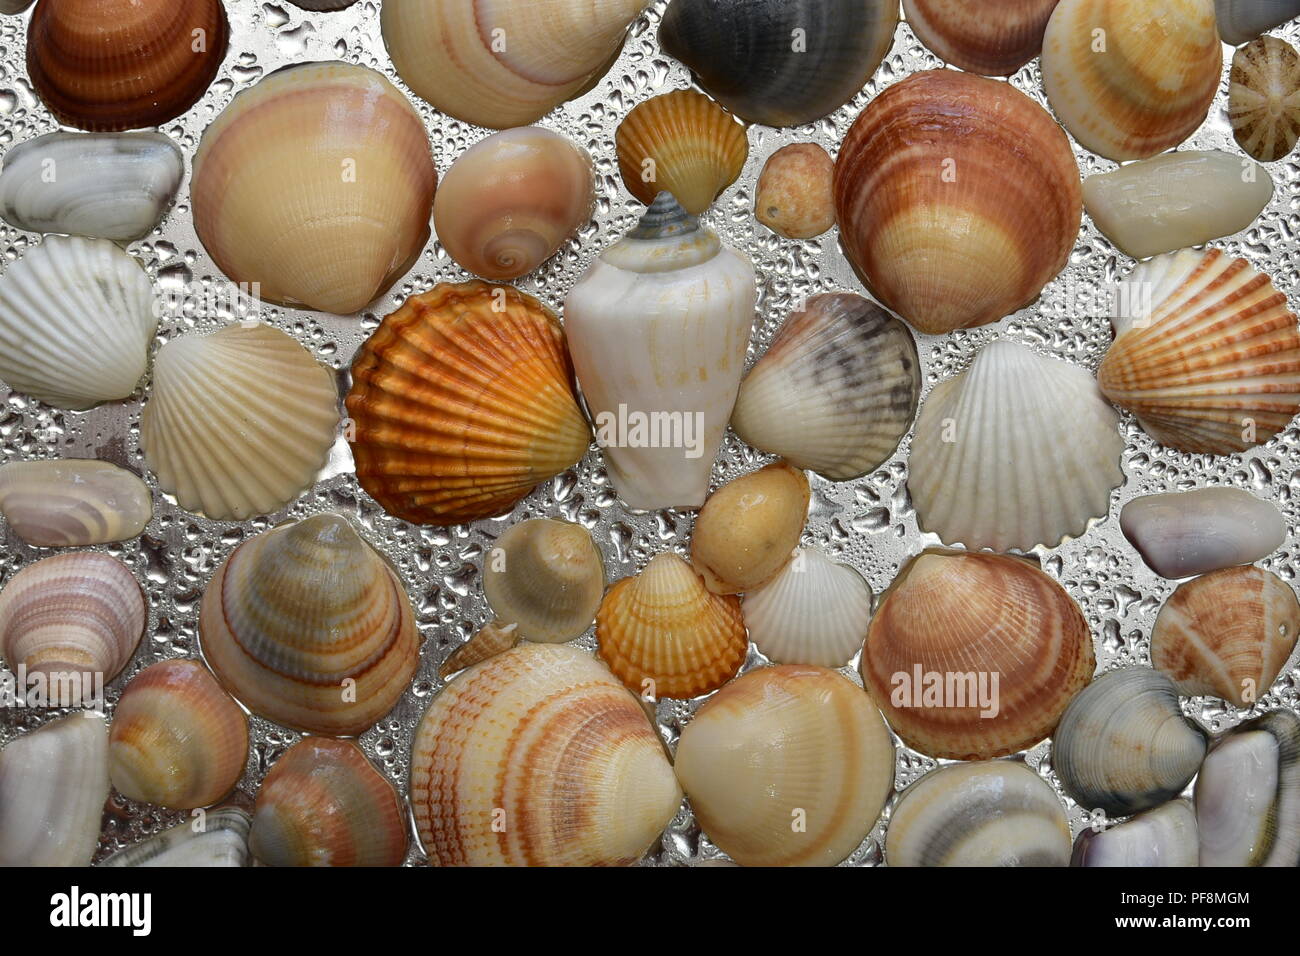 15 Mixed Bag of Sea Shells, Florida Sea Shells, Sanibel Sea Shells